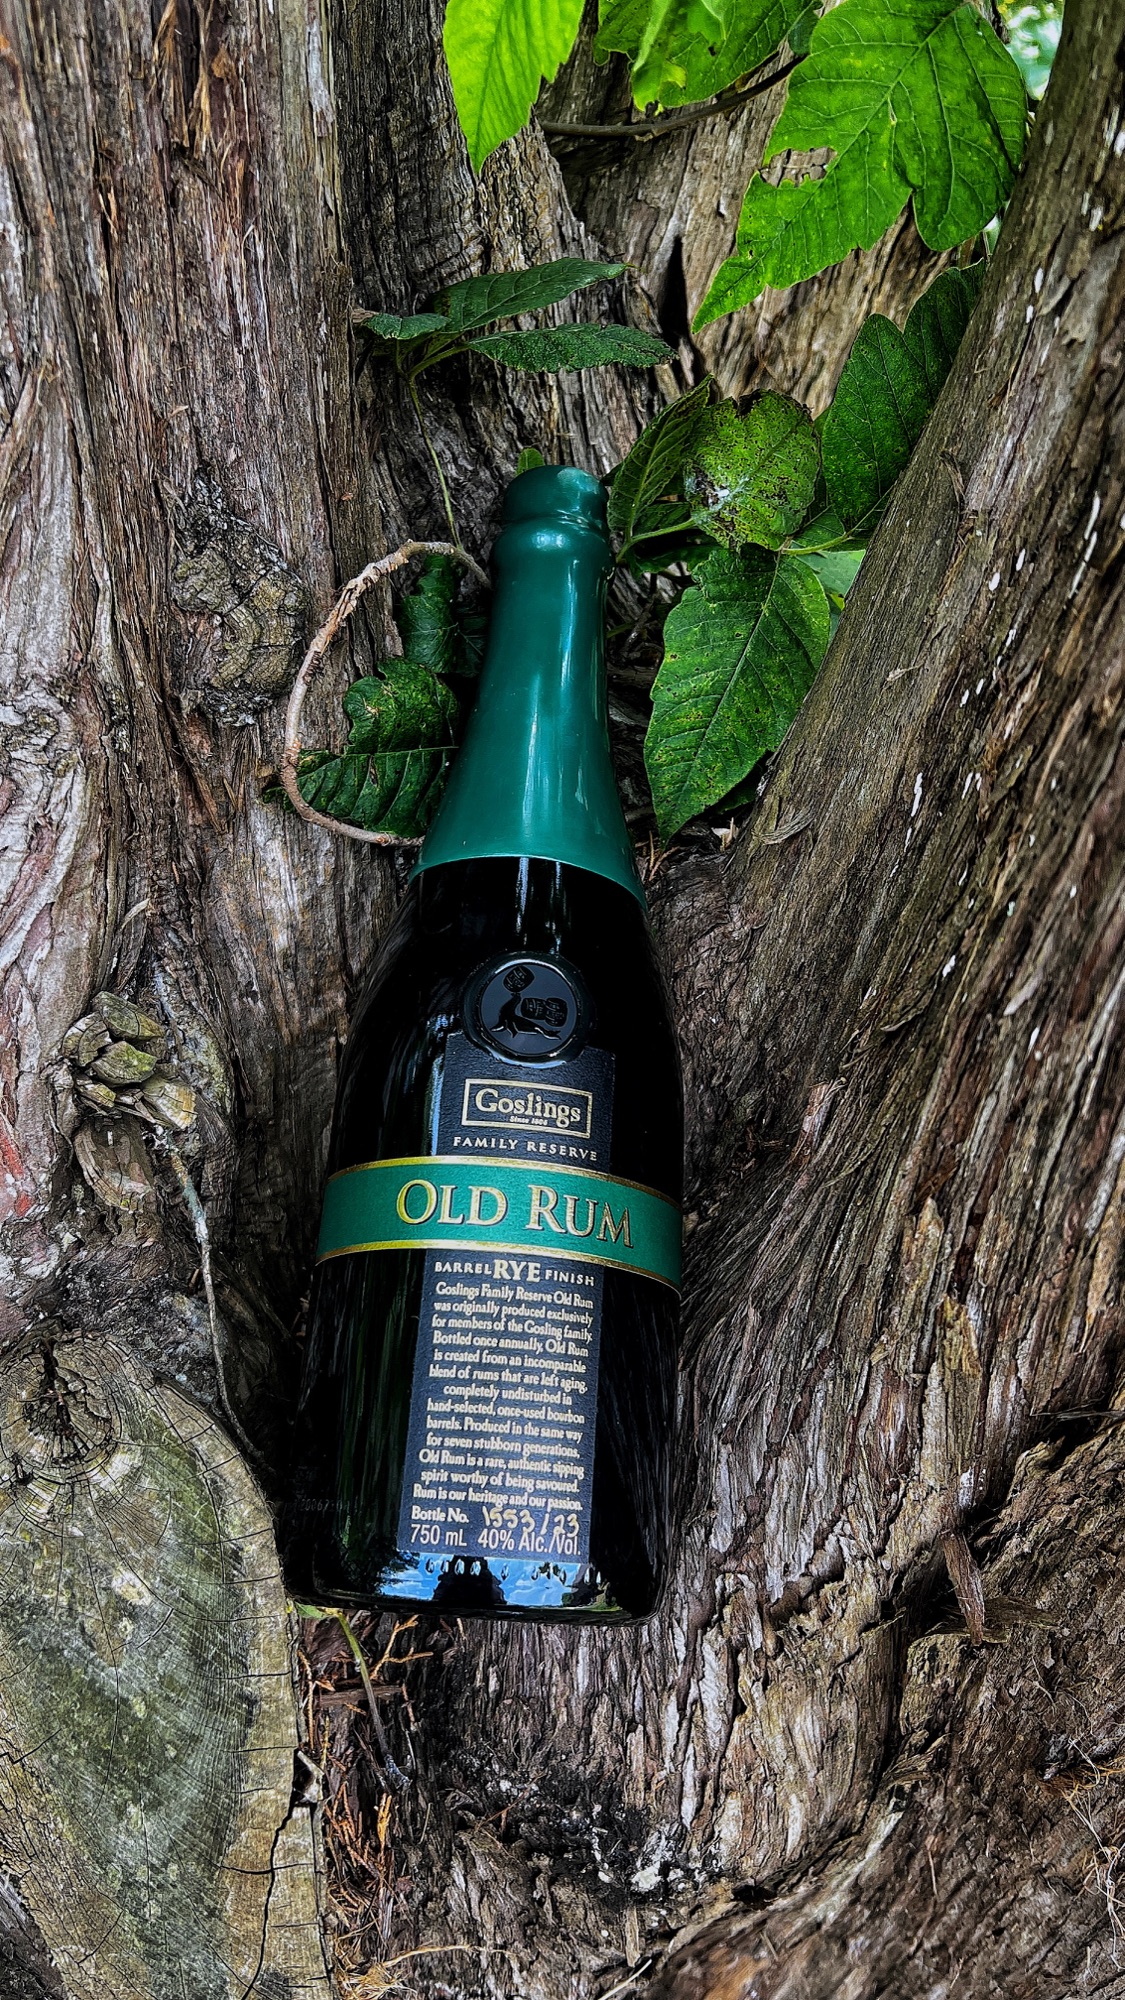 Goslings, Old Rum, Old Rum Rye Casks, Rum, Bermuda, Goslings Old Rum Rye Cask